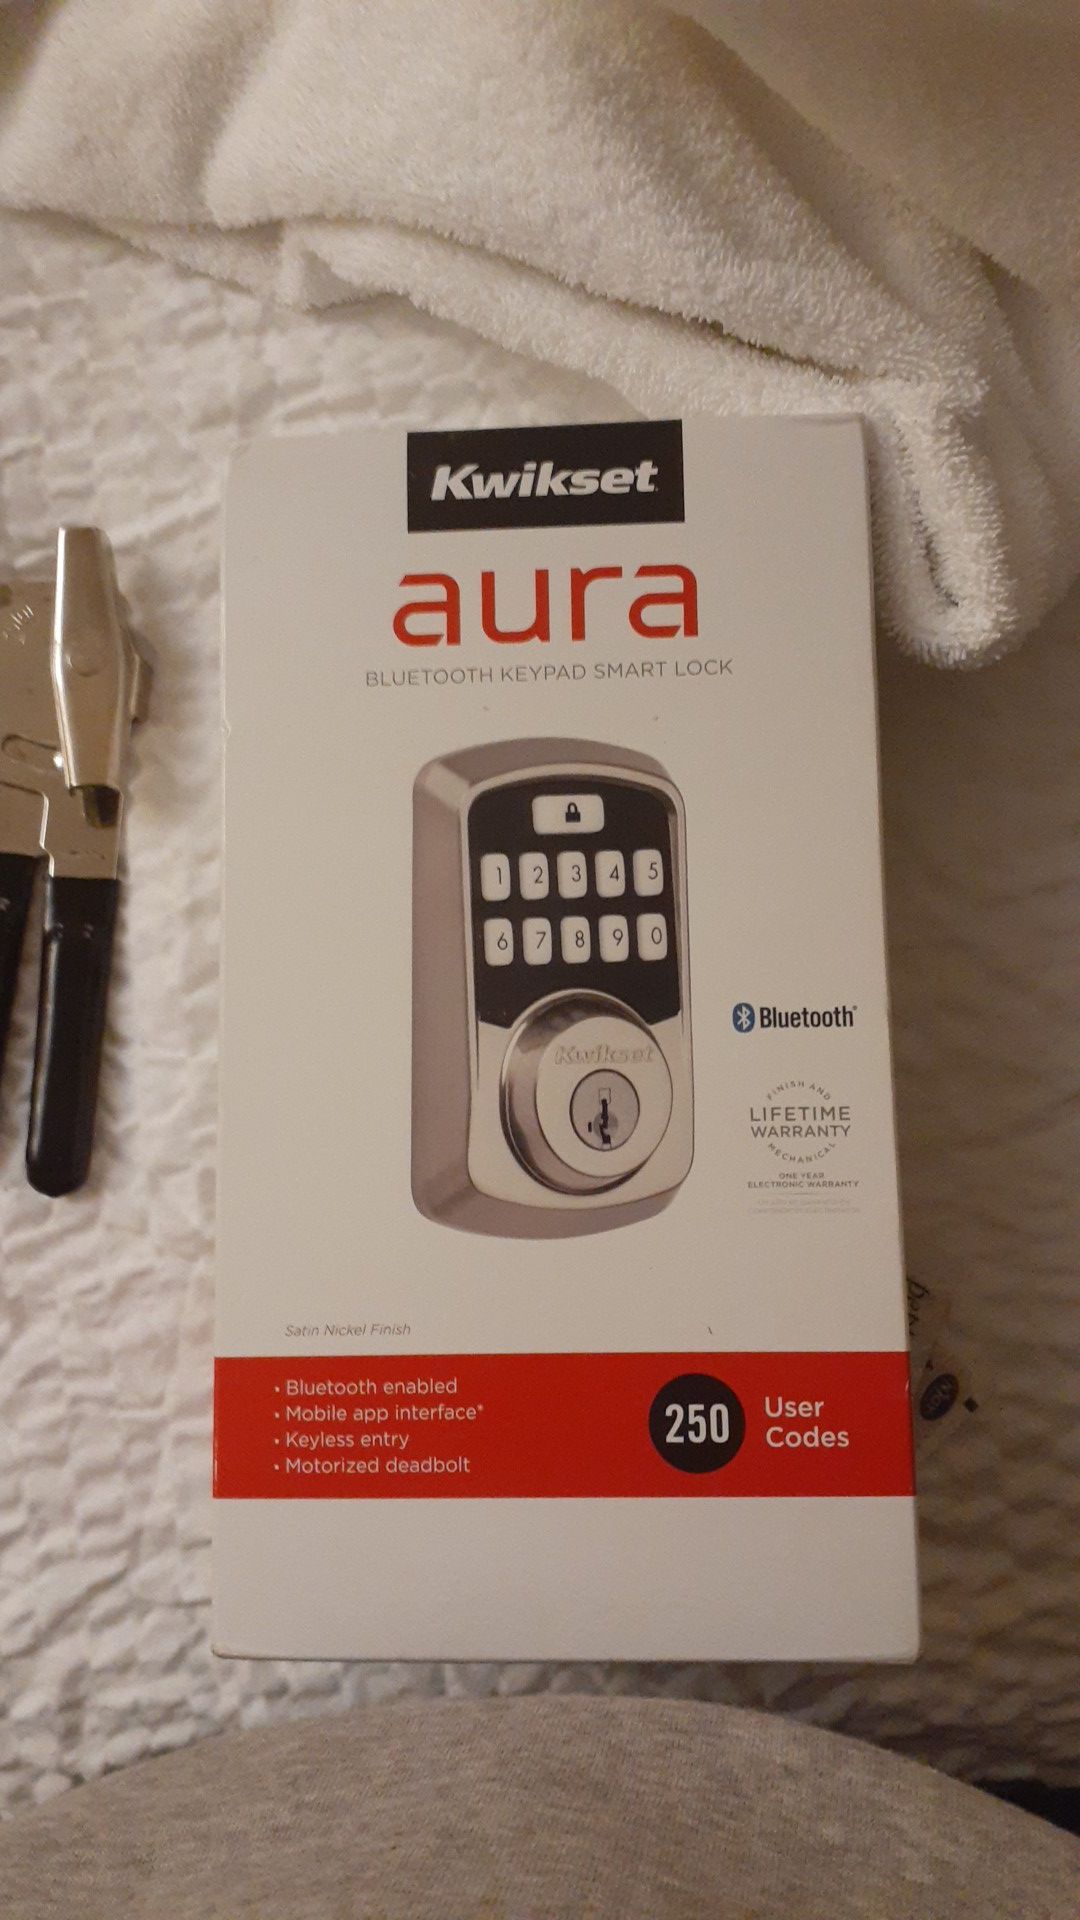 Aura bluethooth keypad smart lock